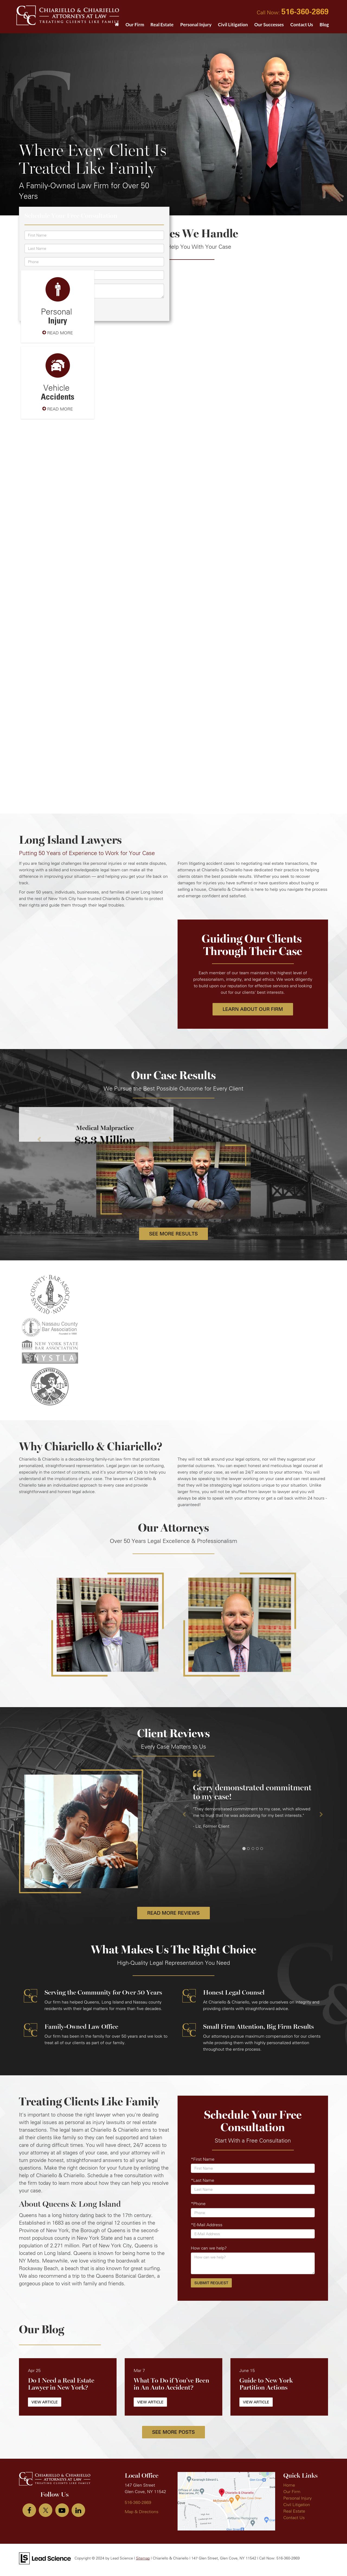 Chiariello & Chiariello - Glen Cove NY Lawyers